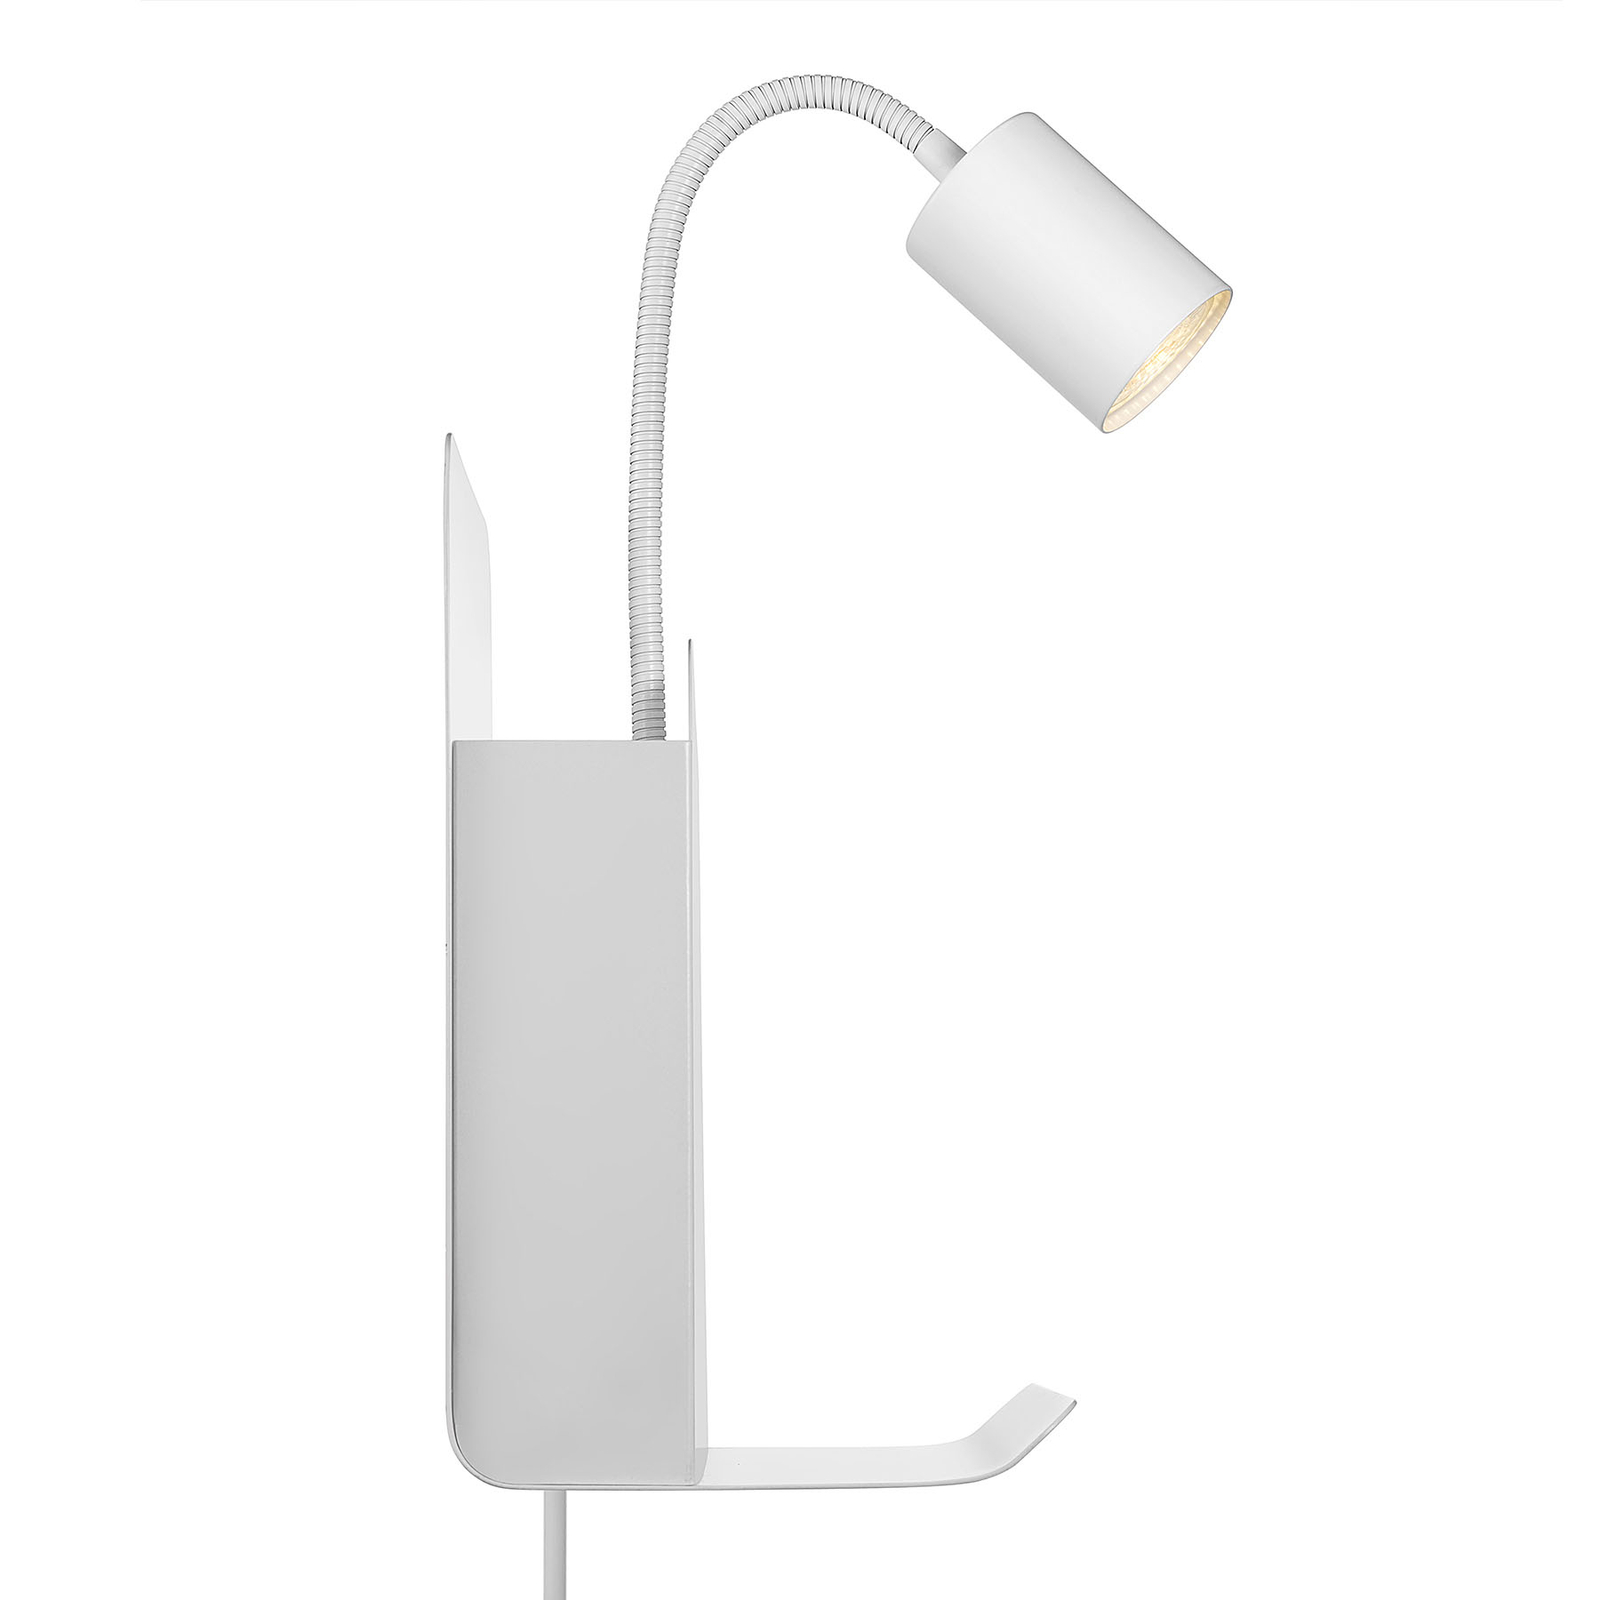 Vägglampa Roomi med hylla och USB, vit